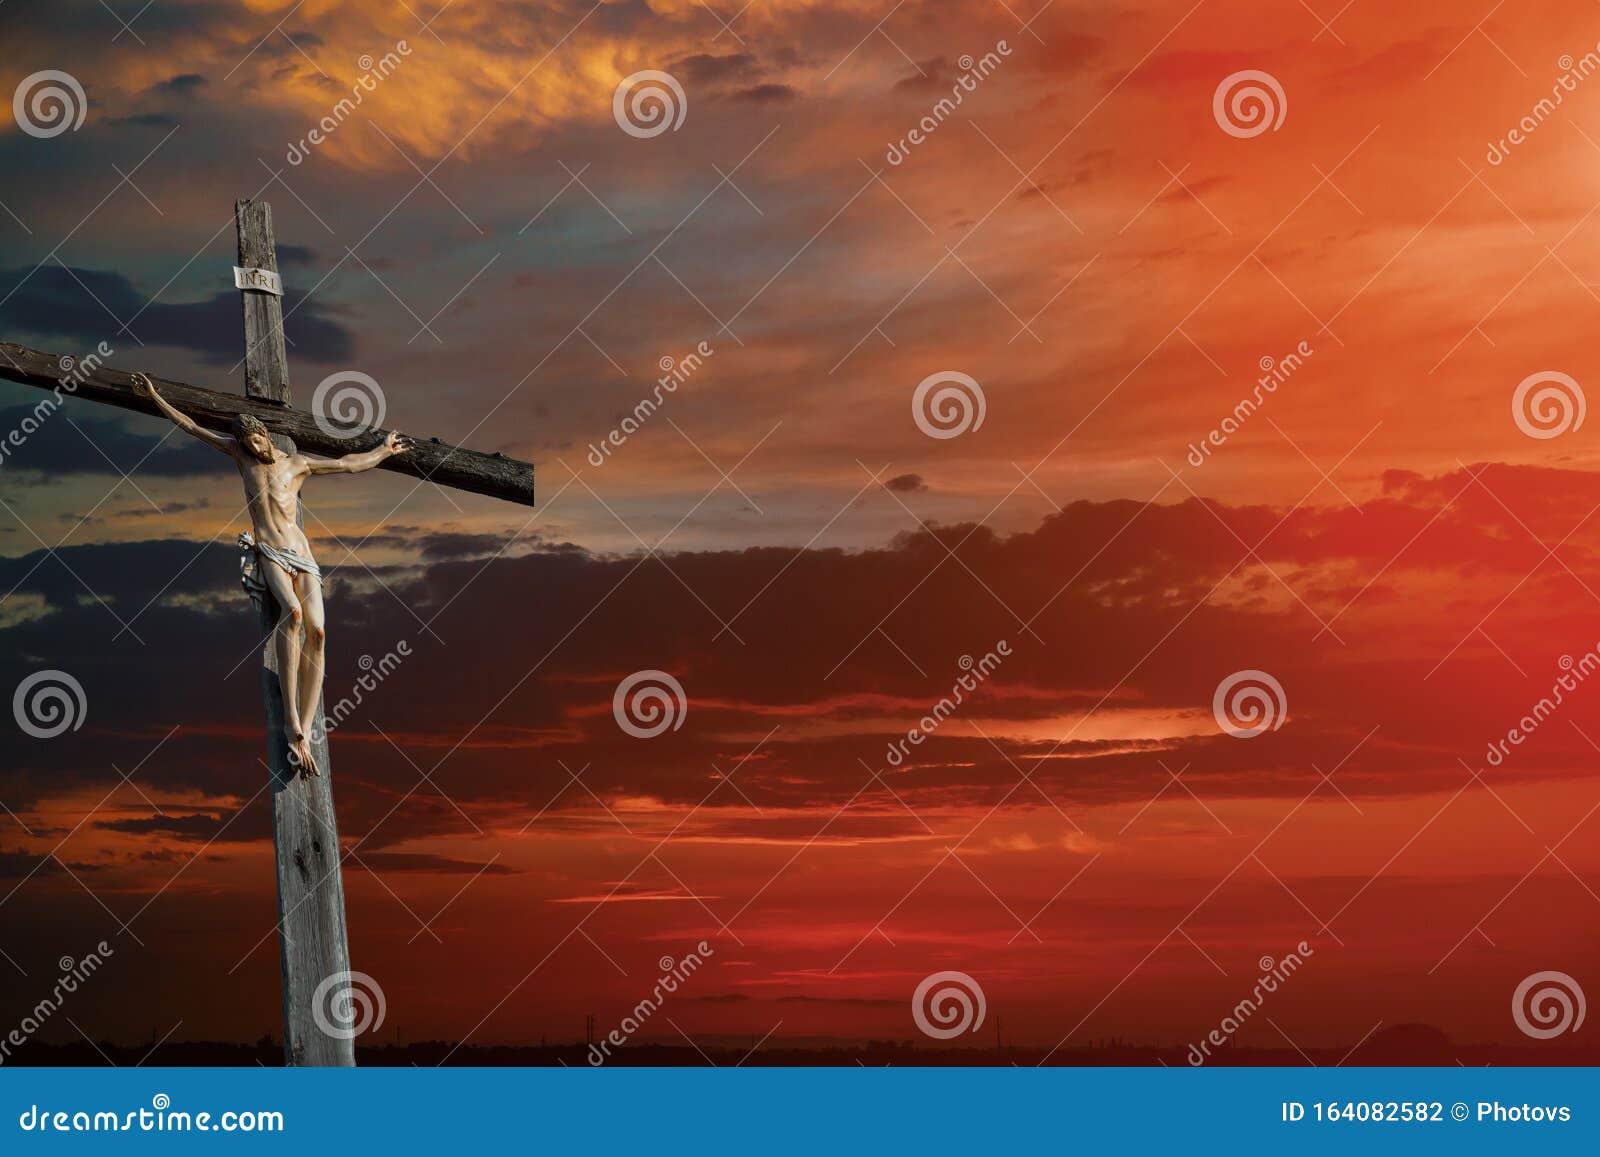 christian cross on sunset sky religion world christian